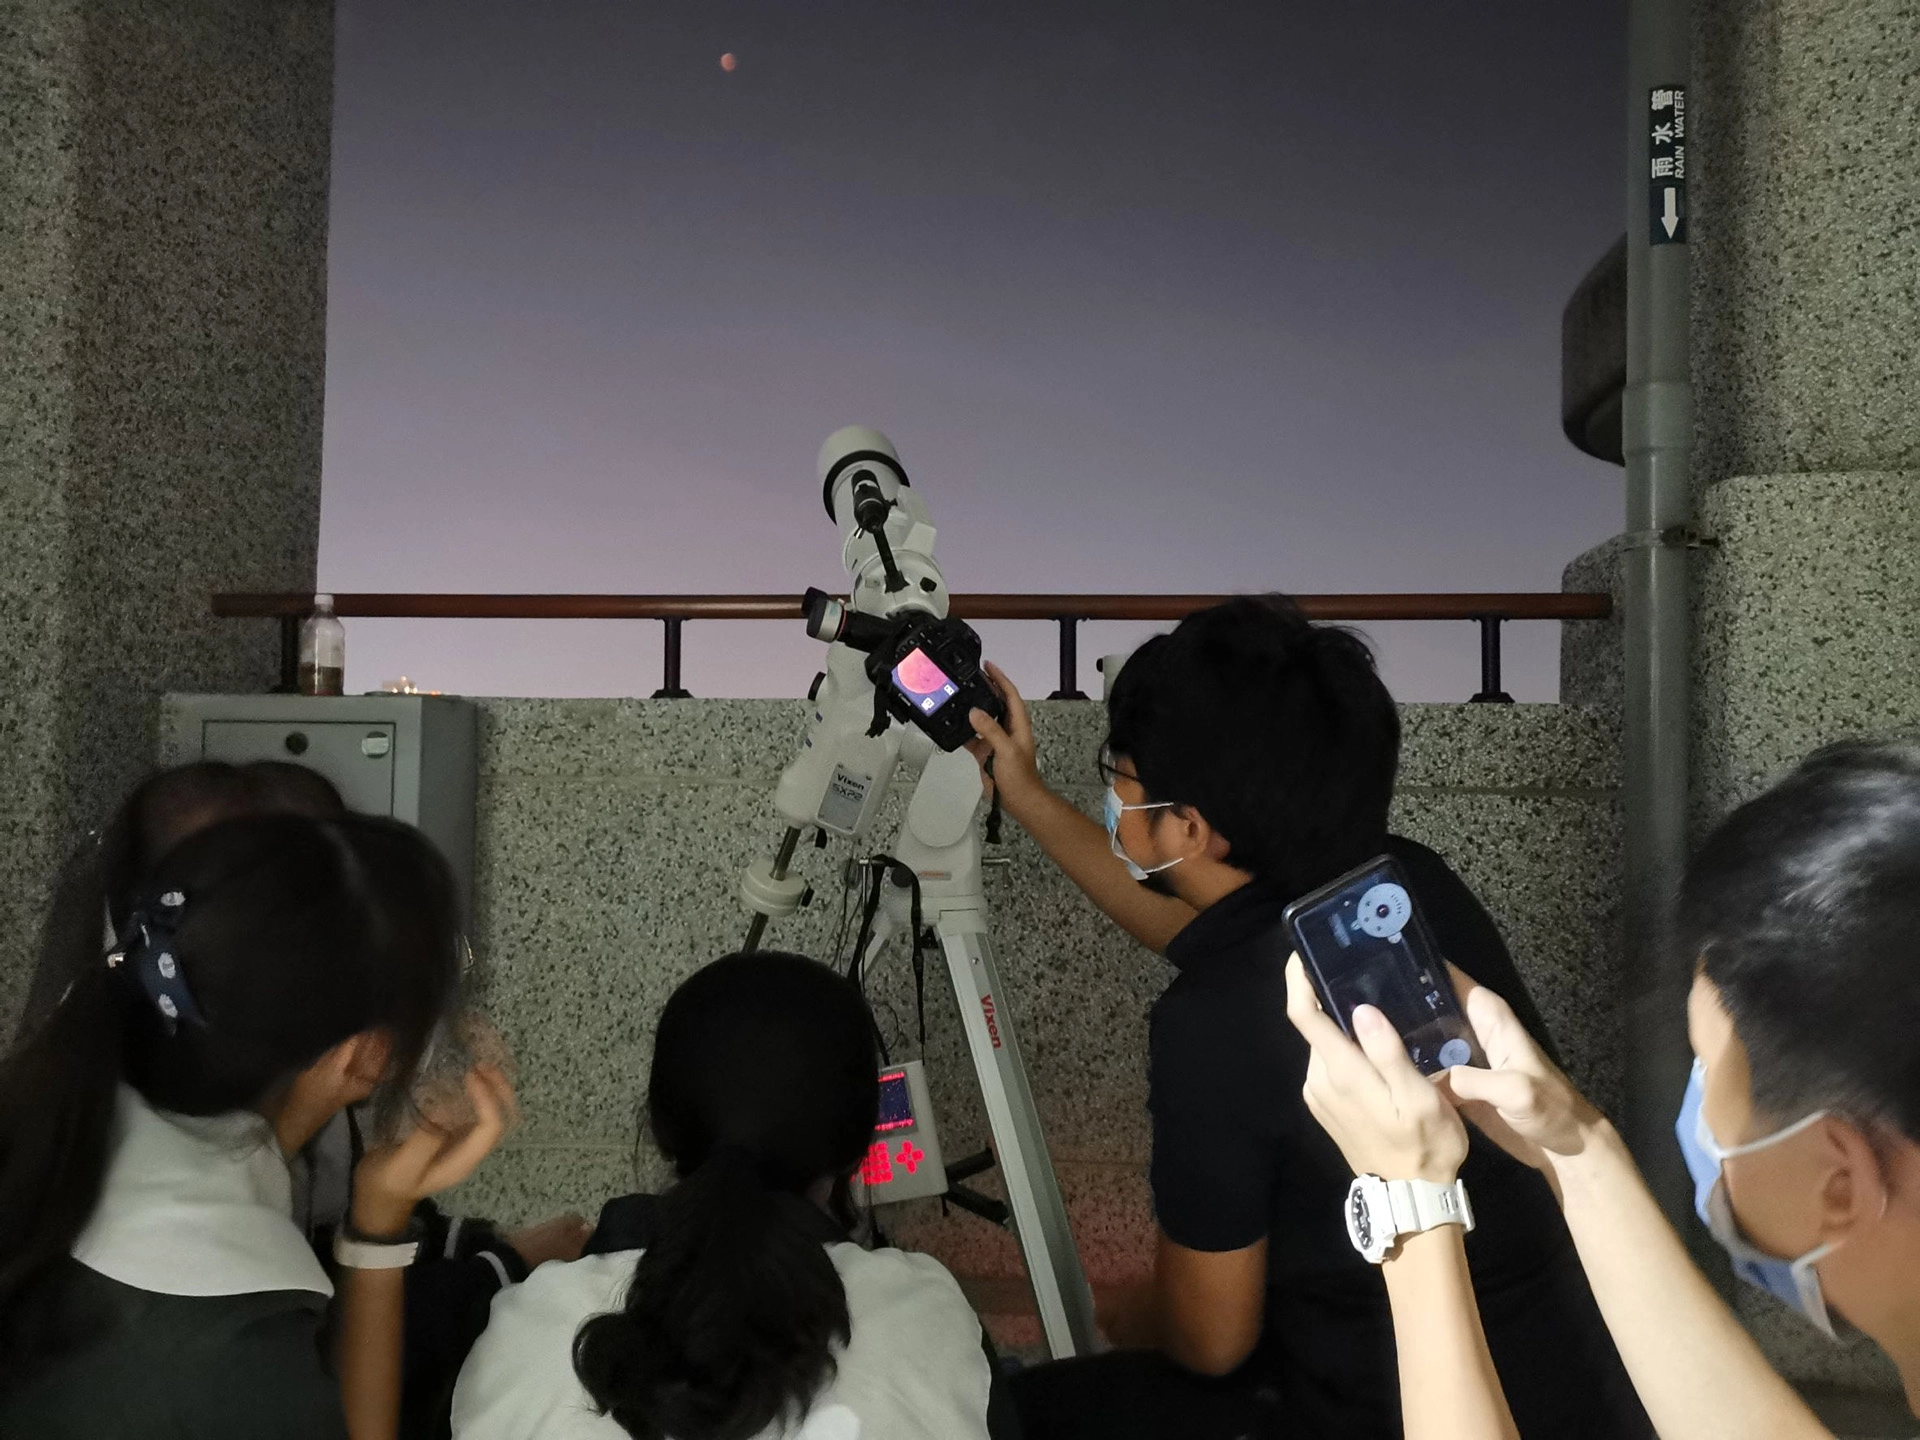 同學學習基礎天文儀器操作、手機簡易星空攝影。